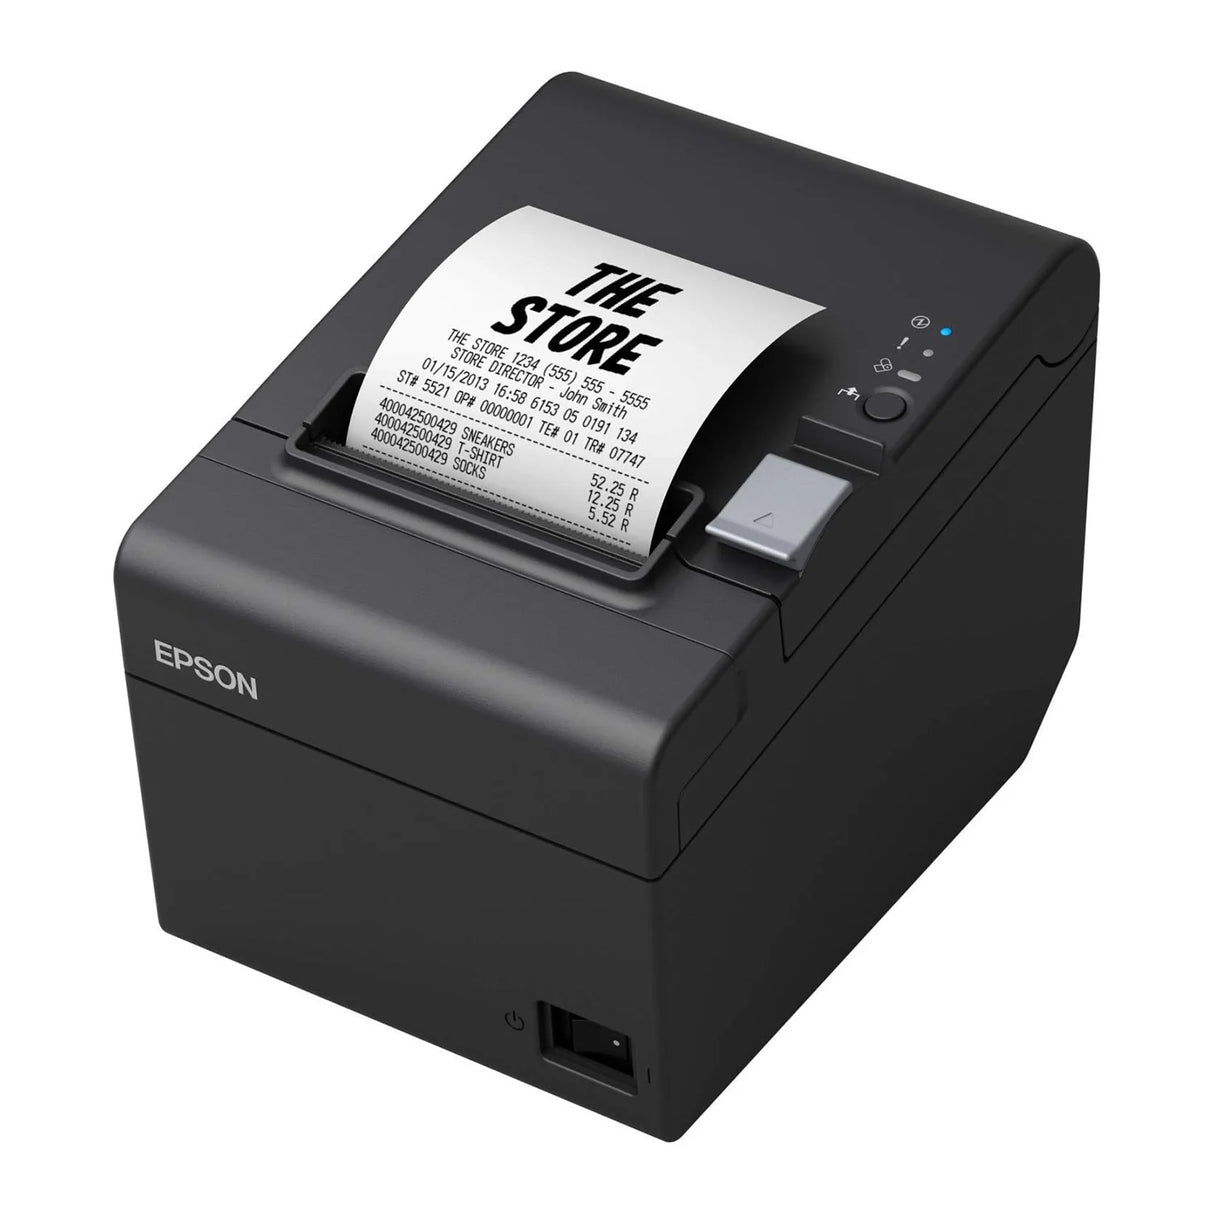 Impresor Epson TM-T20III